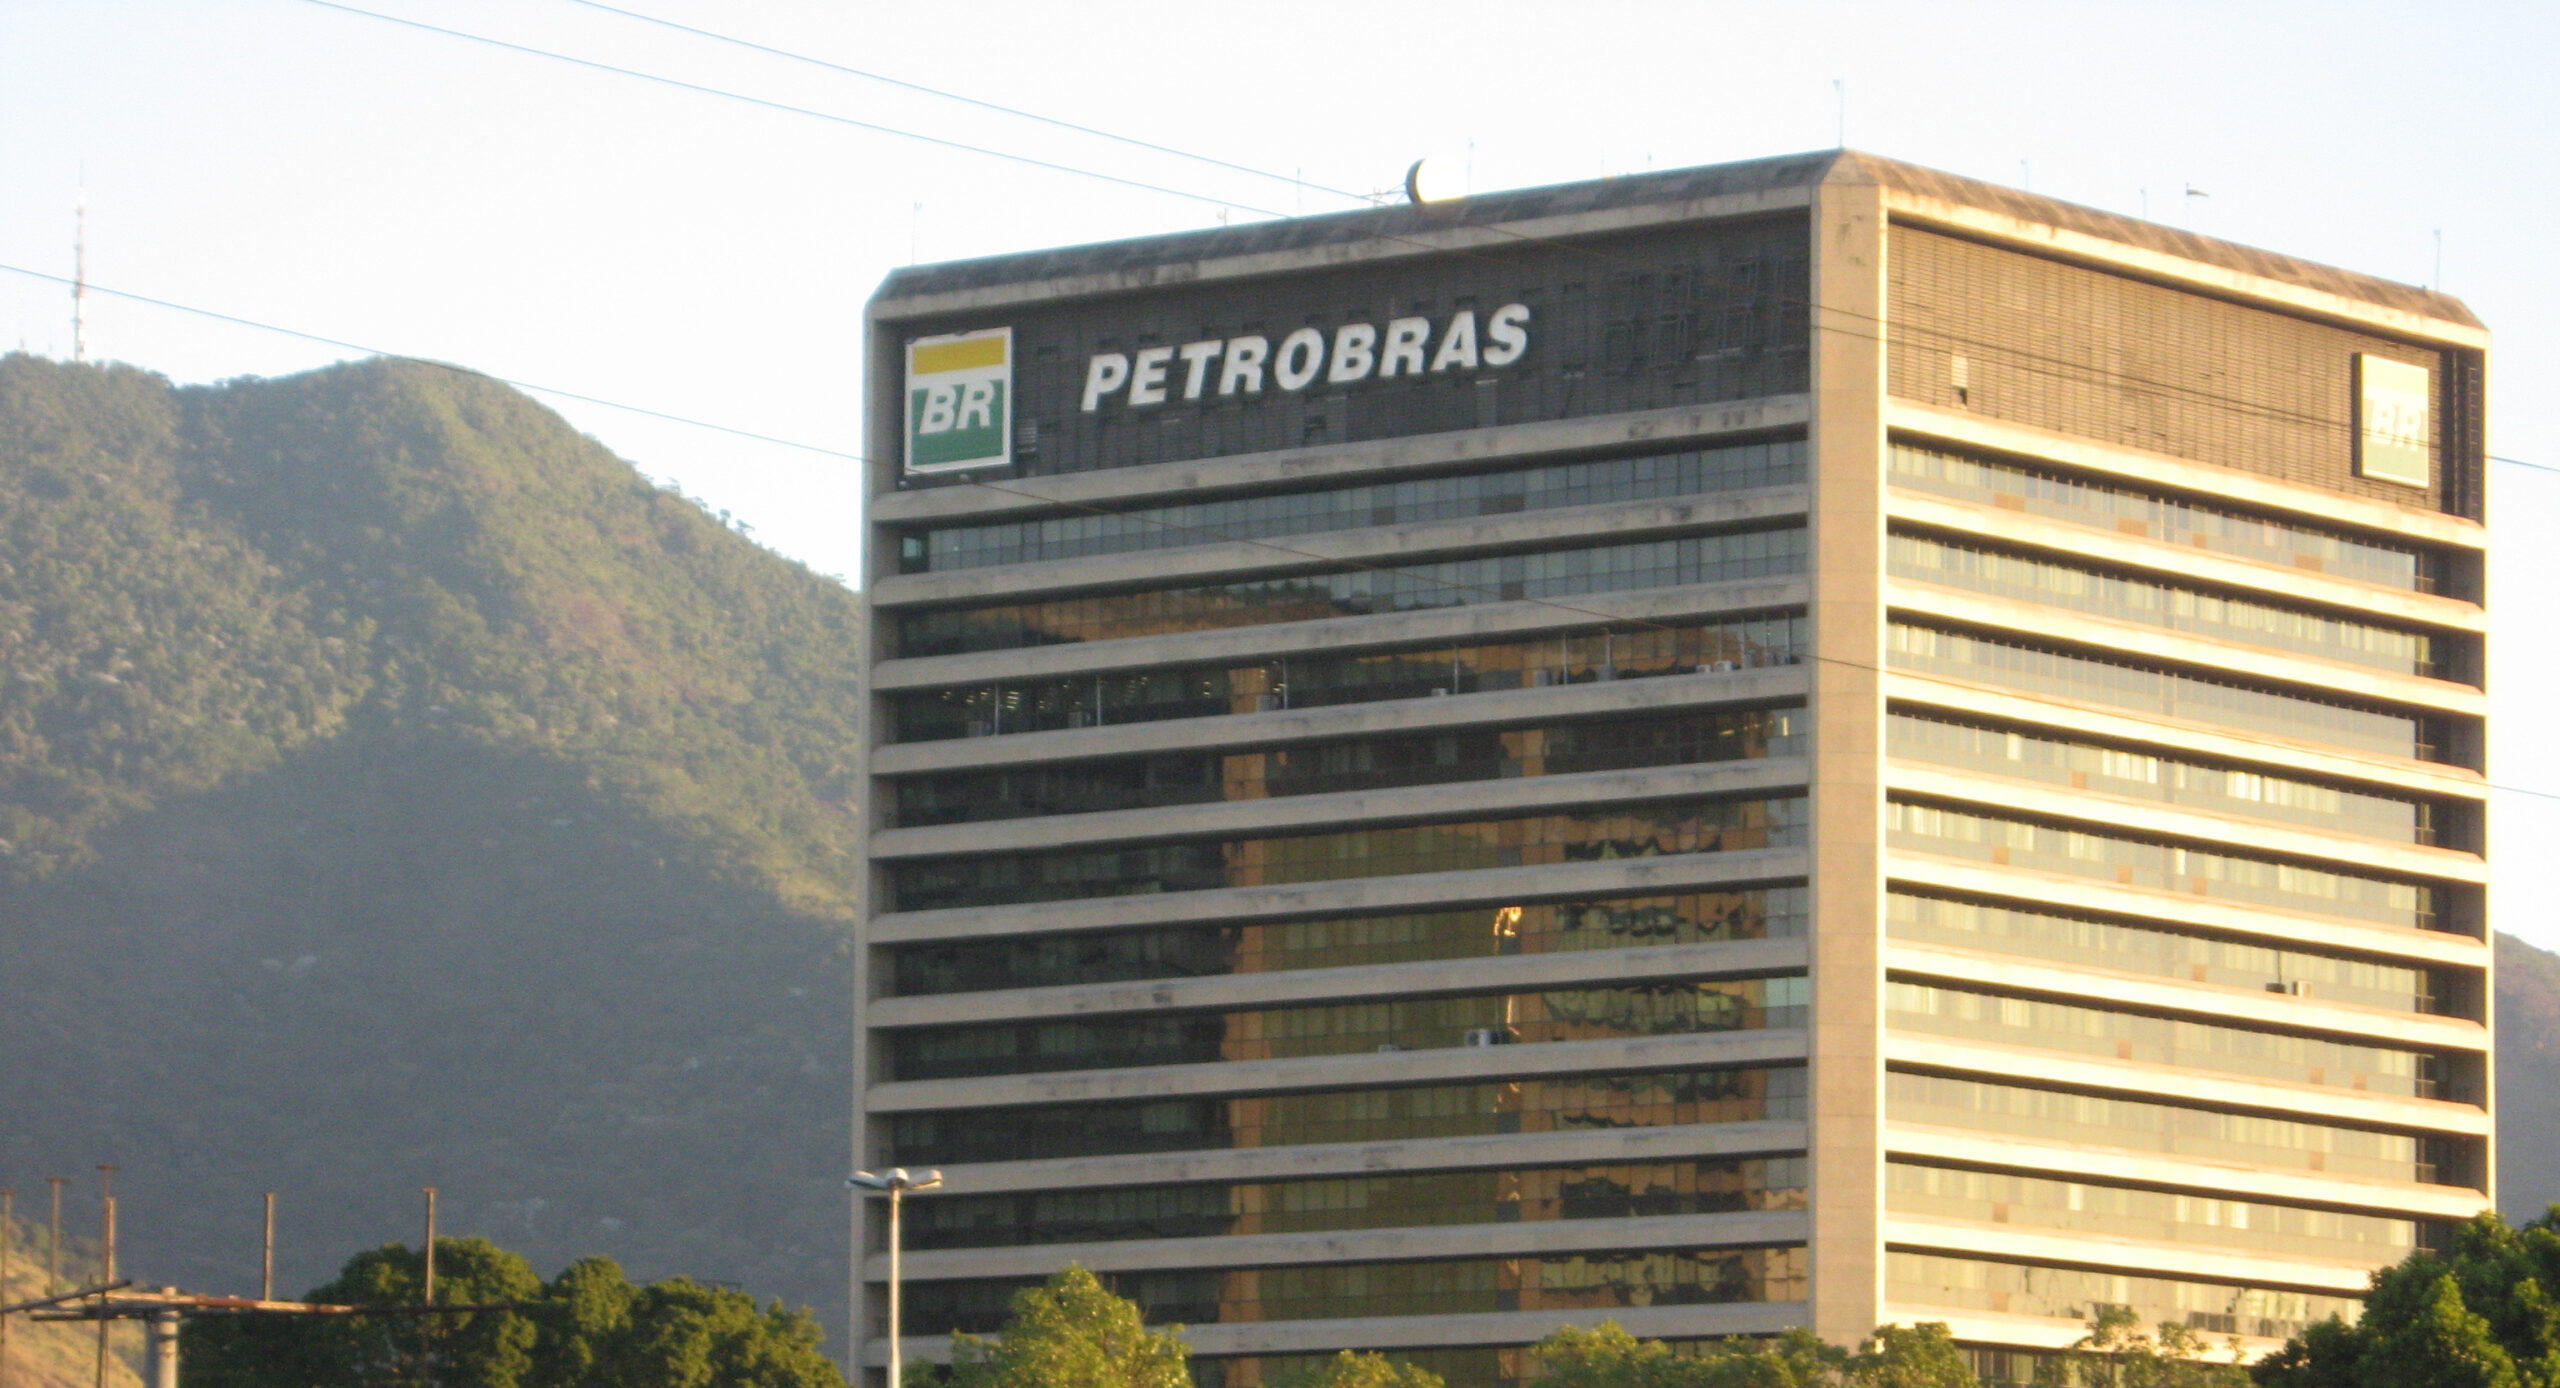 De acordo com a Petrobras, os títulos registrados terão termos e condições similares aos títulos não registrados